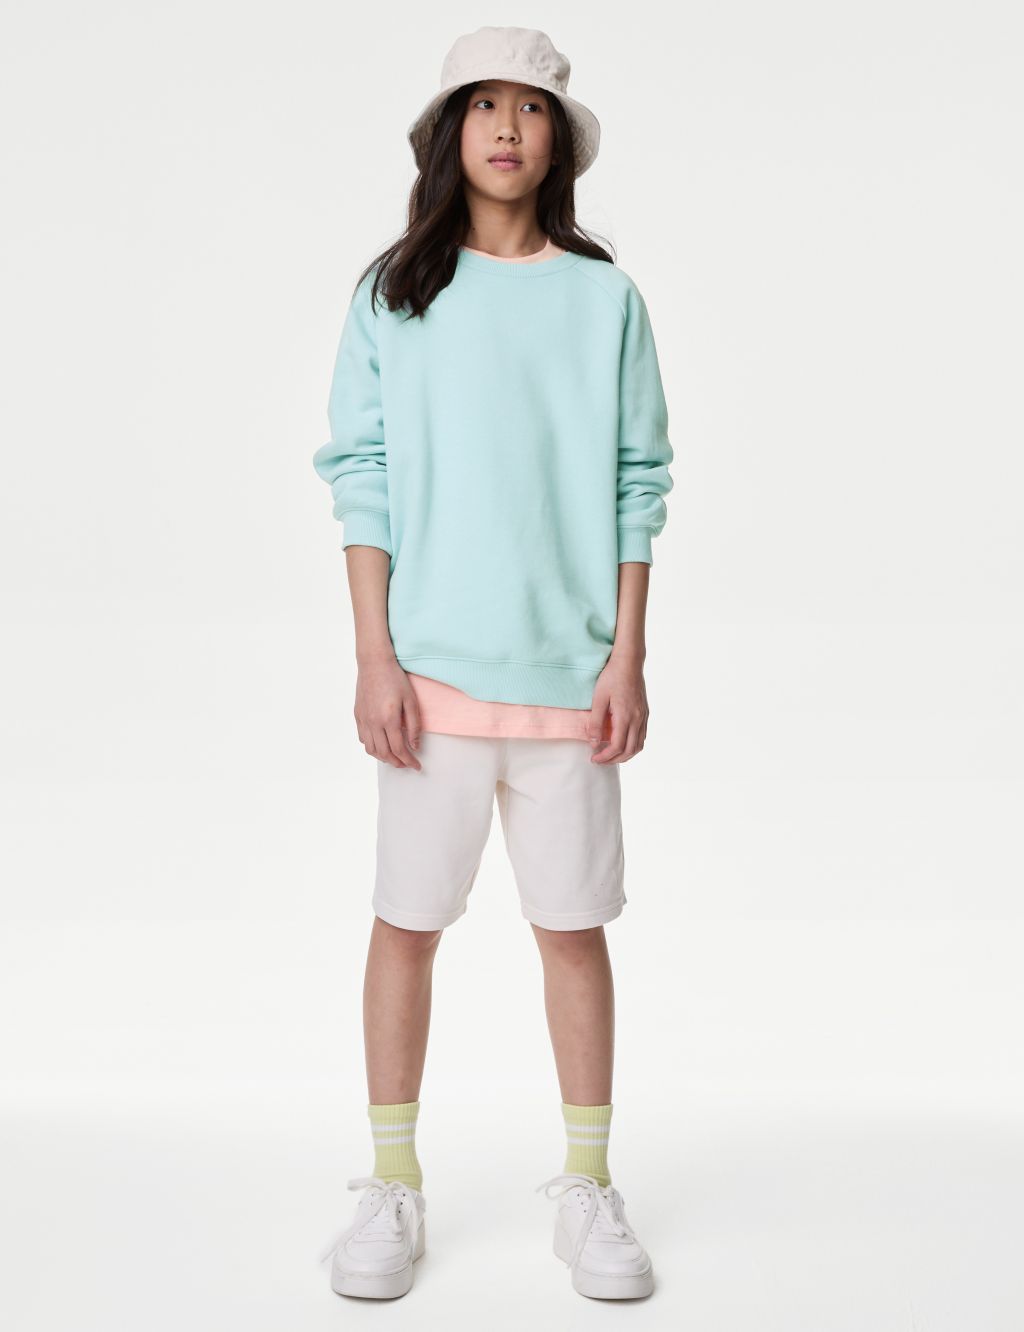 Unisex Cotton Rich Sweatshirt (6-16 Yrs)